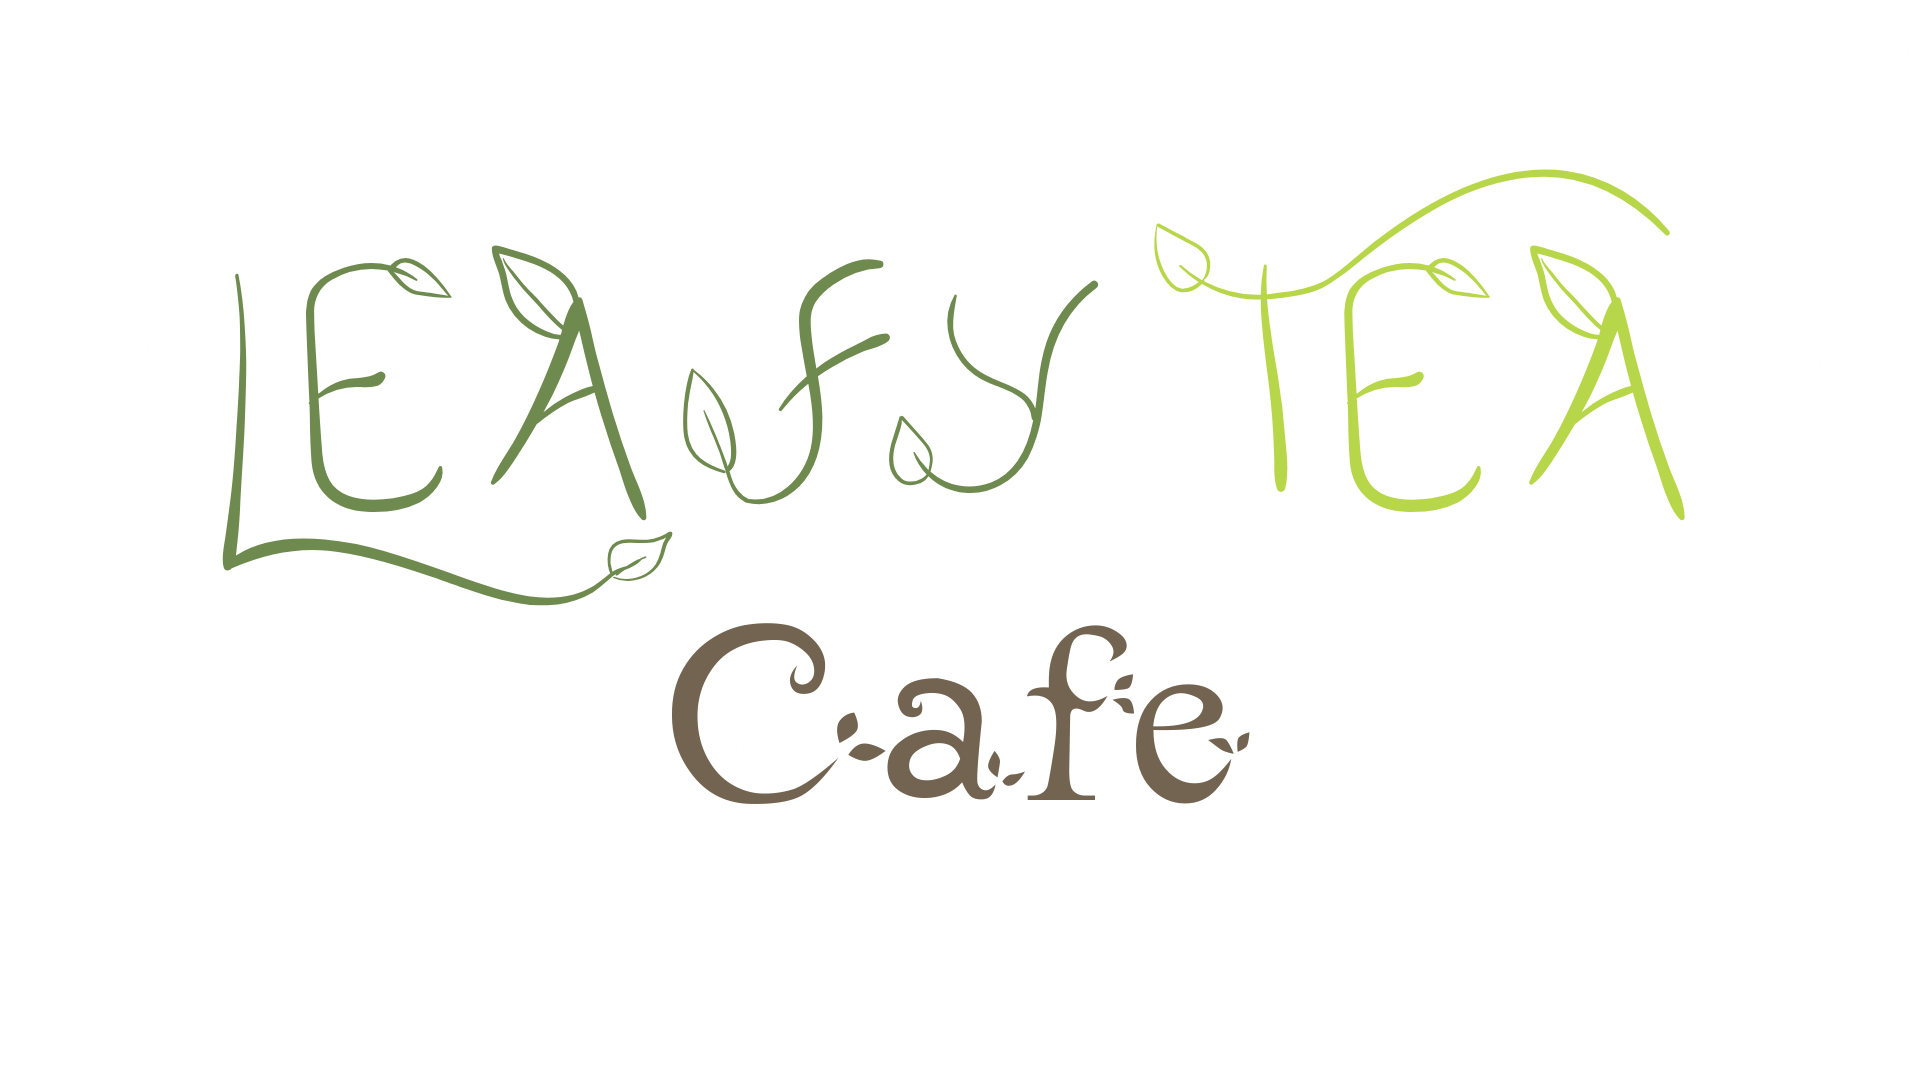 Leafy Tea Cafe Logo